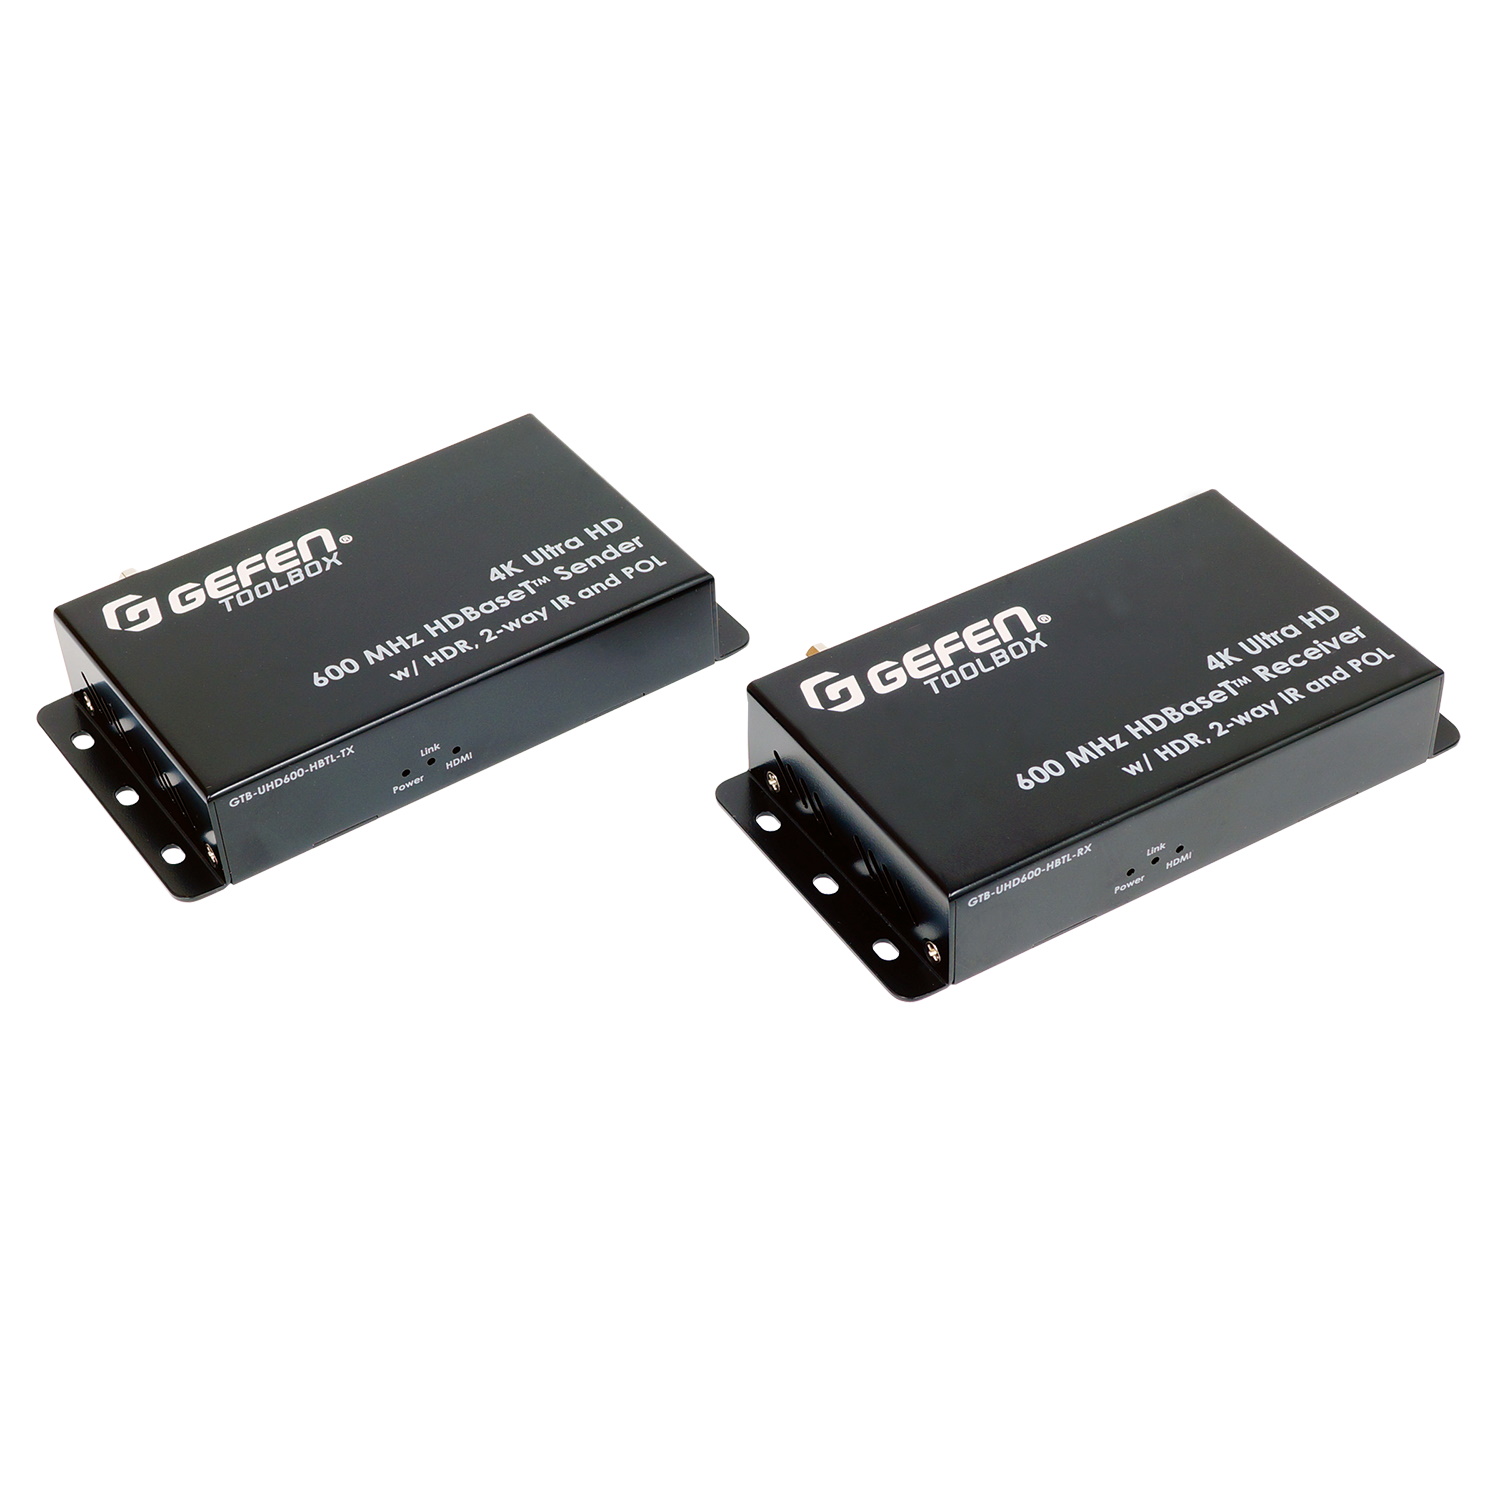 HDMI коммутаторы, разветвители, повторители Gefen GTB-UHD600-HBTL hdmi коммутаторы разветвители повторители dr hd комплект приемник передатчик hdmi по ip dr hd ex 100 lir